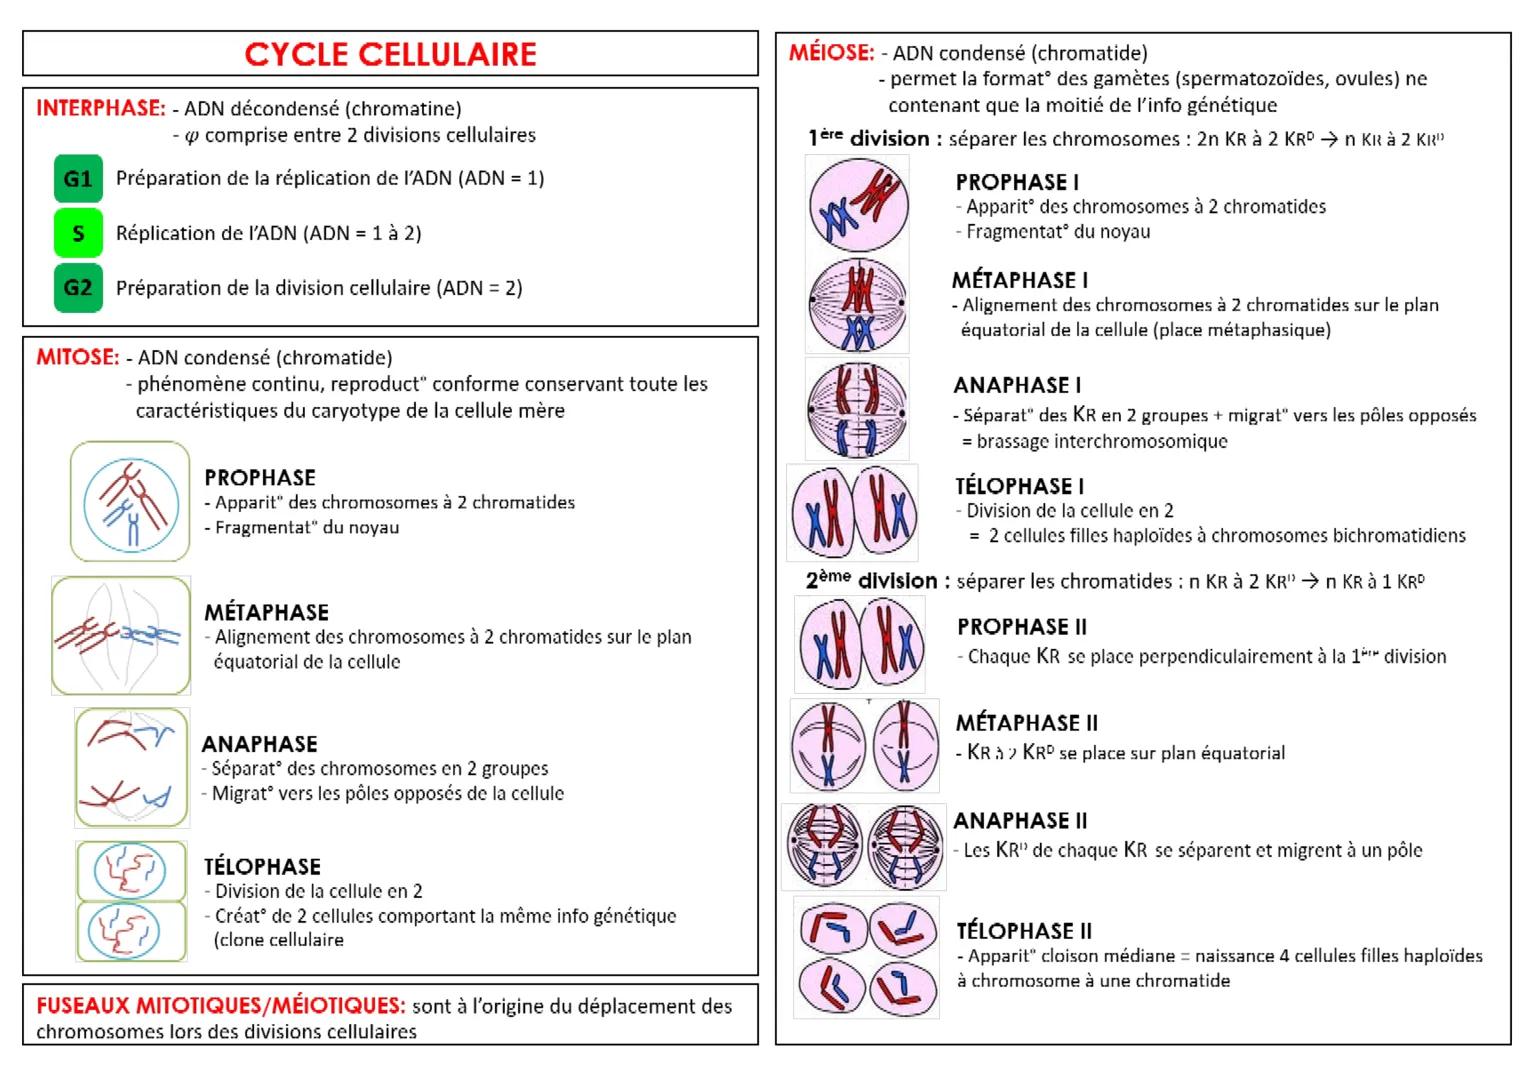 CYCLE CELLULAIRE
INTERPHASE: - ADN décondensé (chromatine)
- comprise entre 2 divisions cellulaires
G1 Préparation de la réplication de l'AD